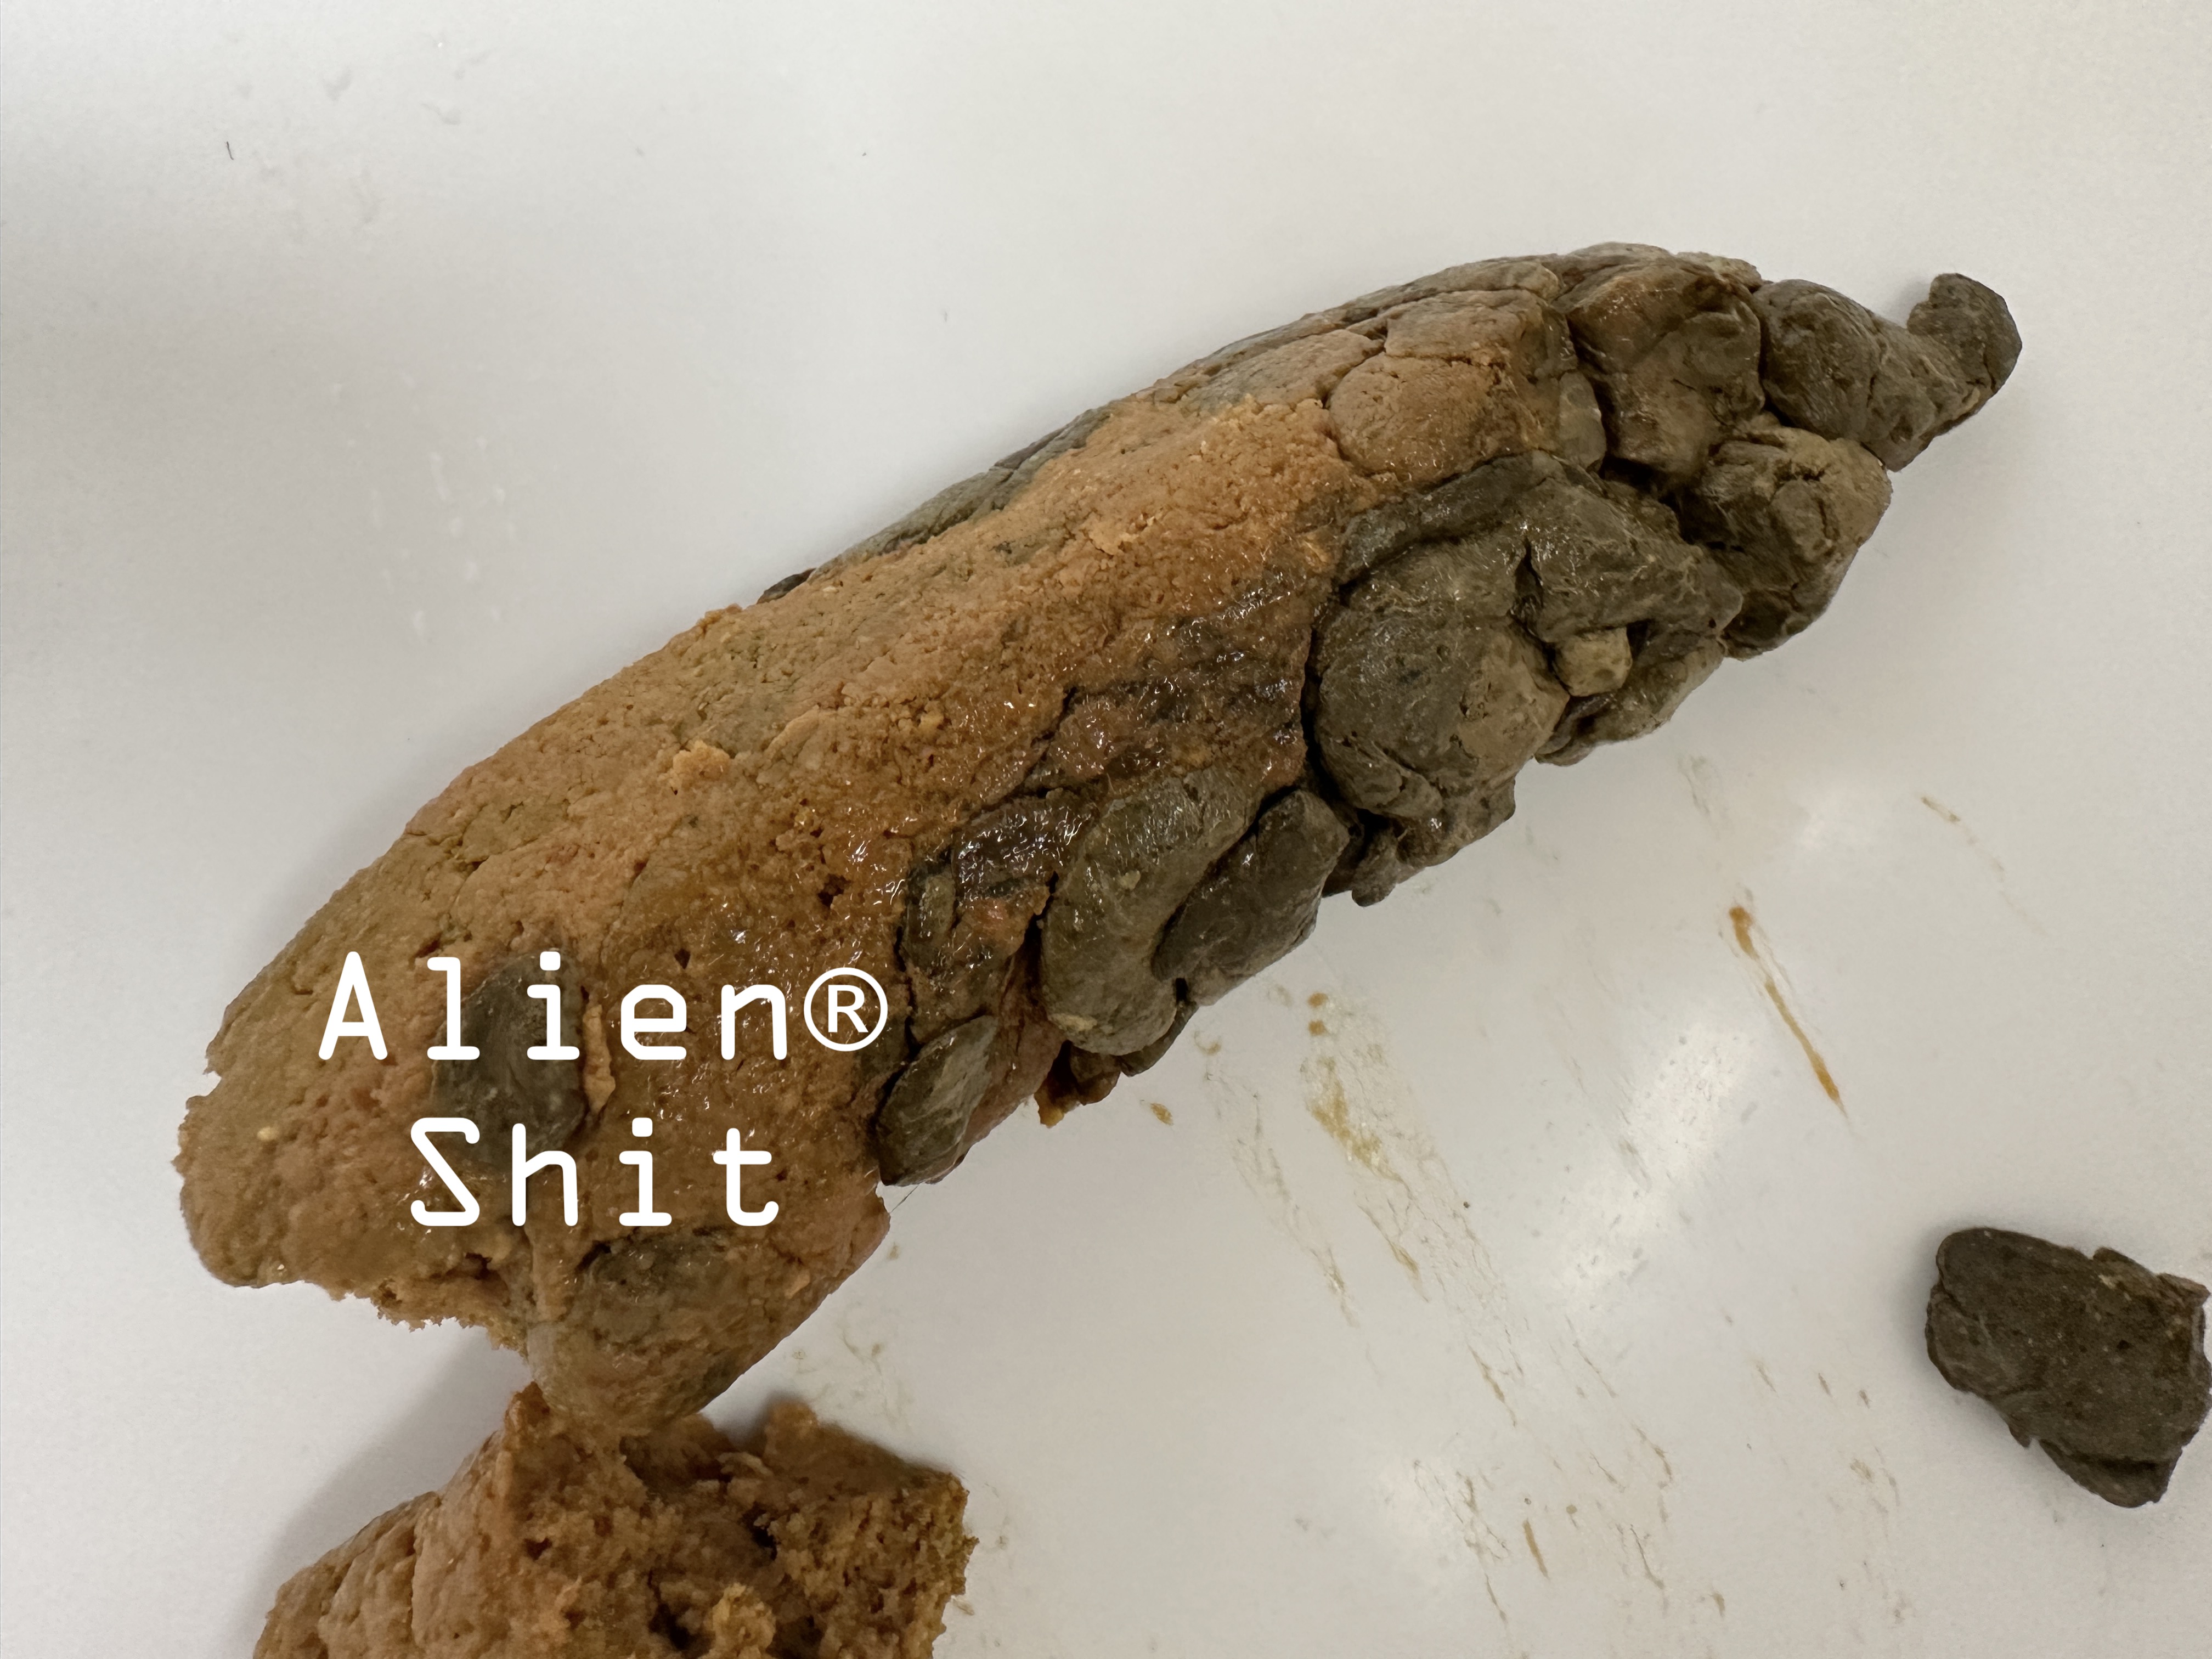 Alien® shit